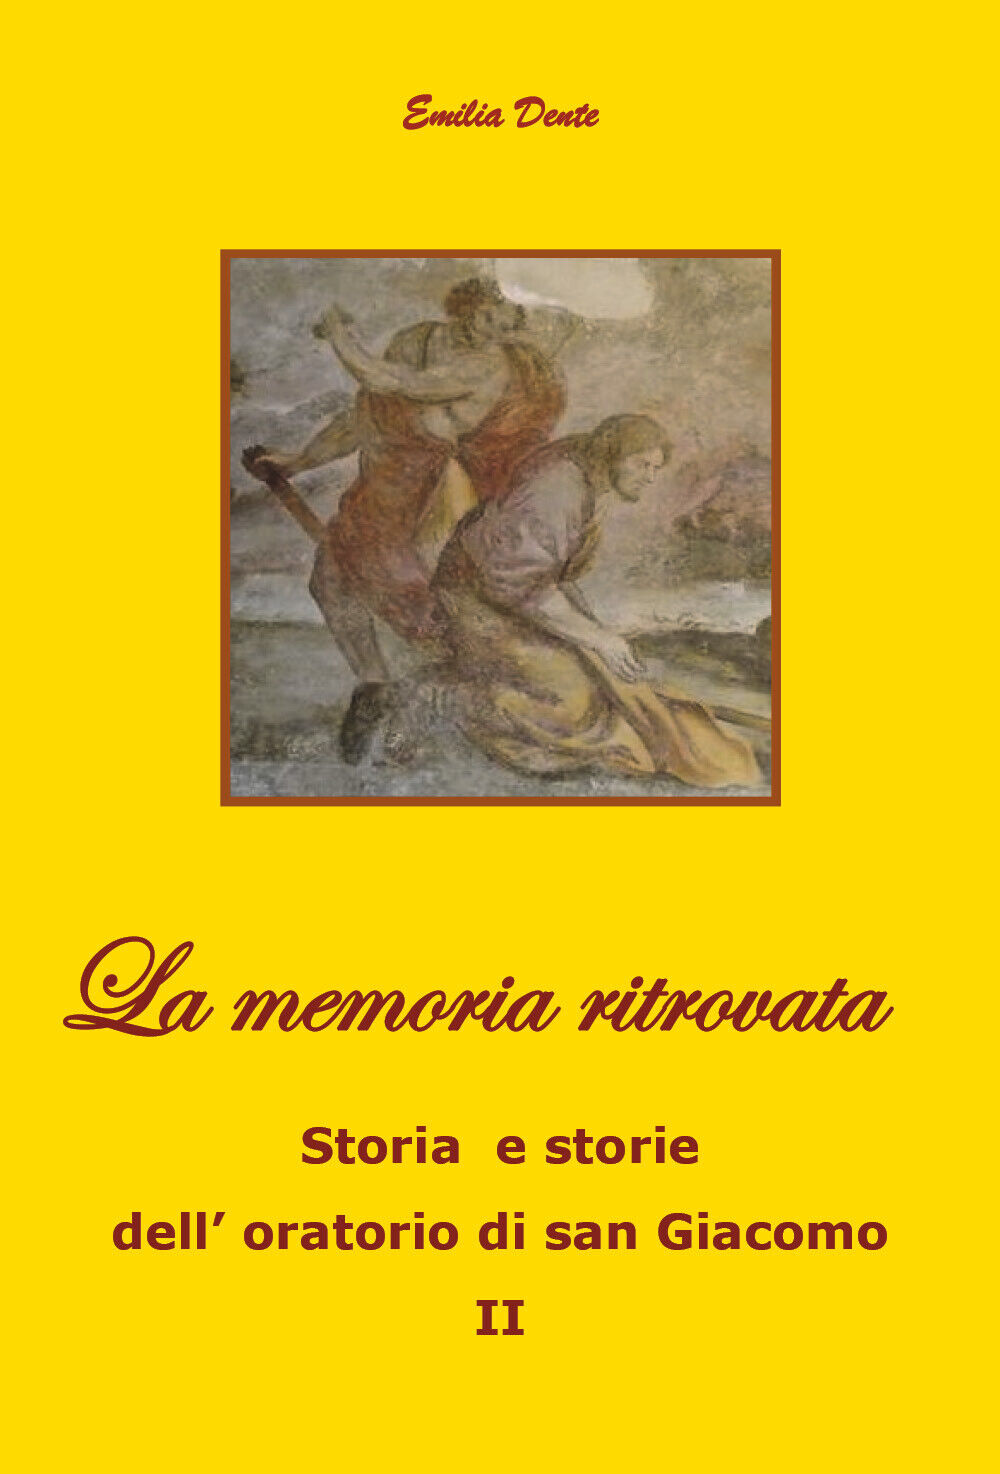 La memoria ritrovata Storia e storie delL'oratorio di san Giacomo II, 2019